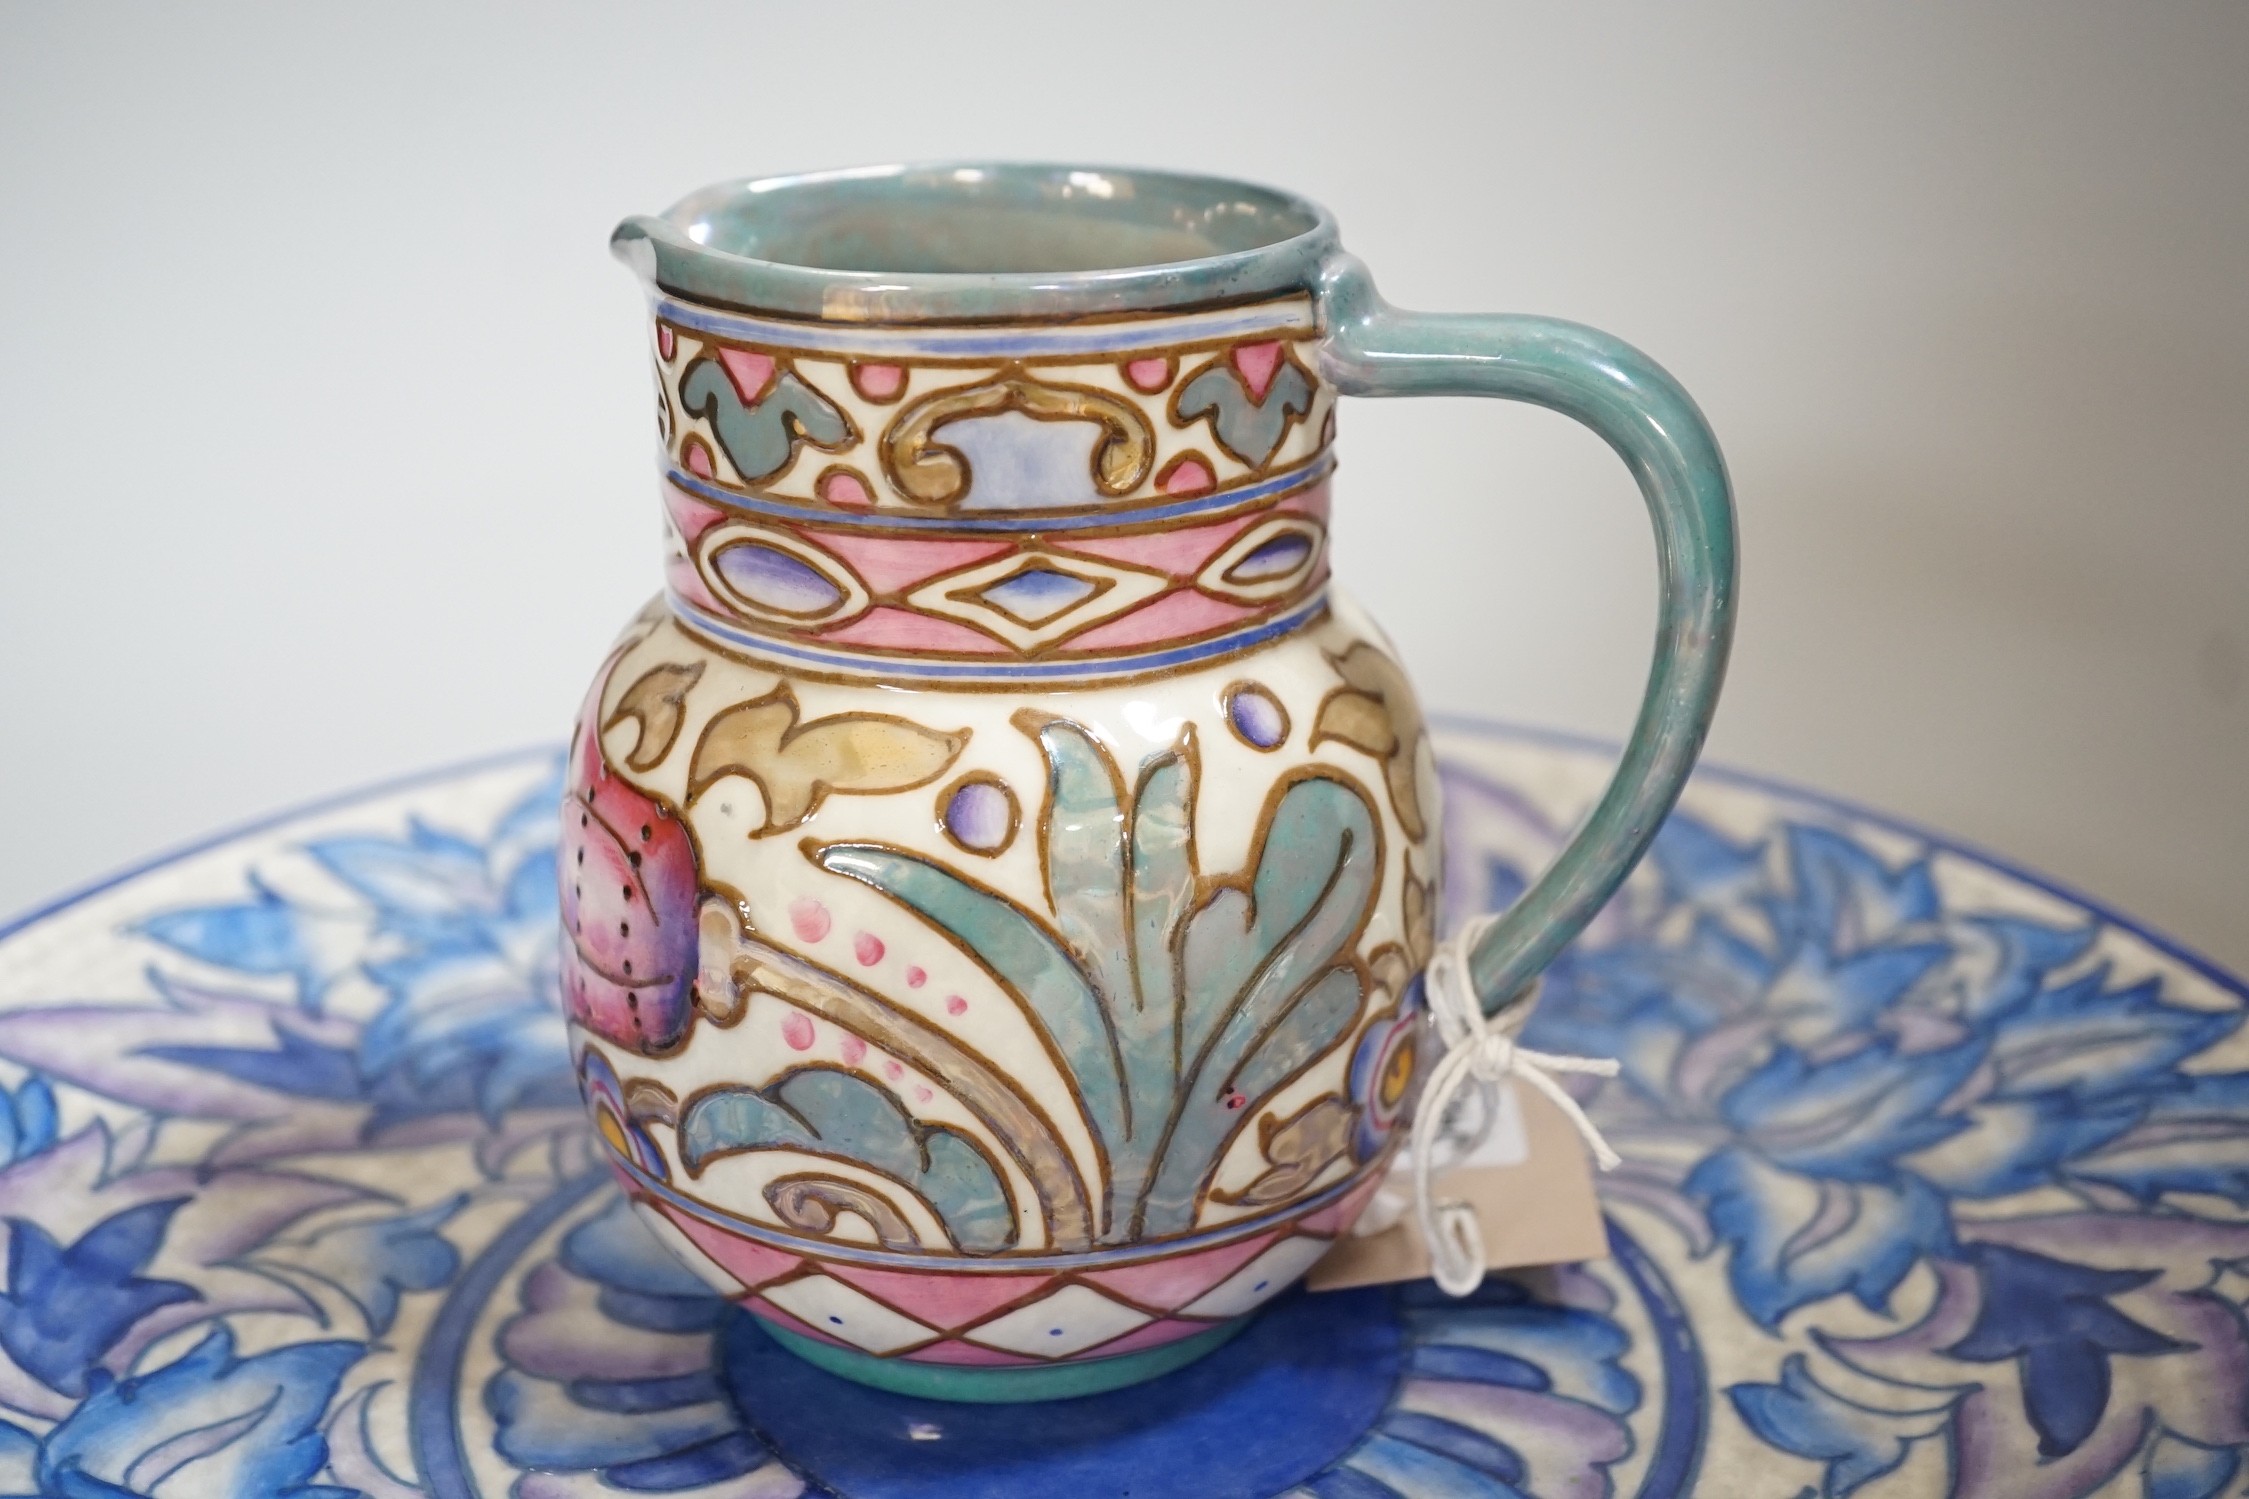 A Burleigh ware Charlotte Rhead lustre jug and a Crown Ducal dish, diameter 32cm